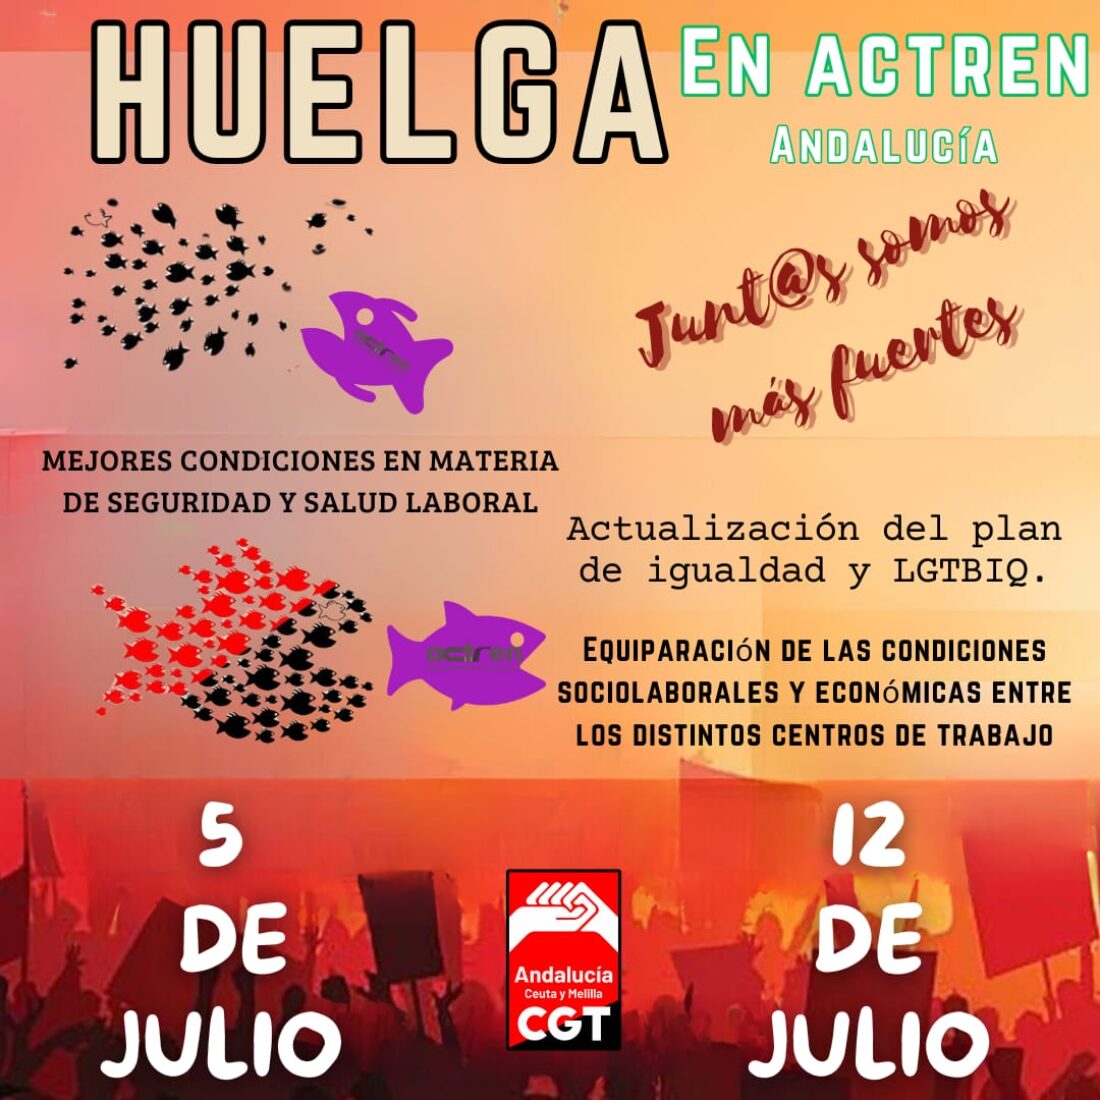 La plantilla de ACTREN en Andalucía desarrolla durante la jornada de hoy la primera de las dos jornadas de huelga convocadas por CGT